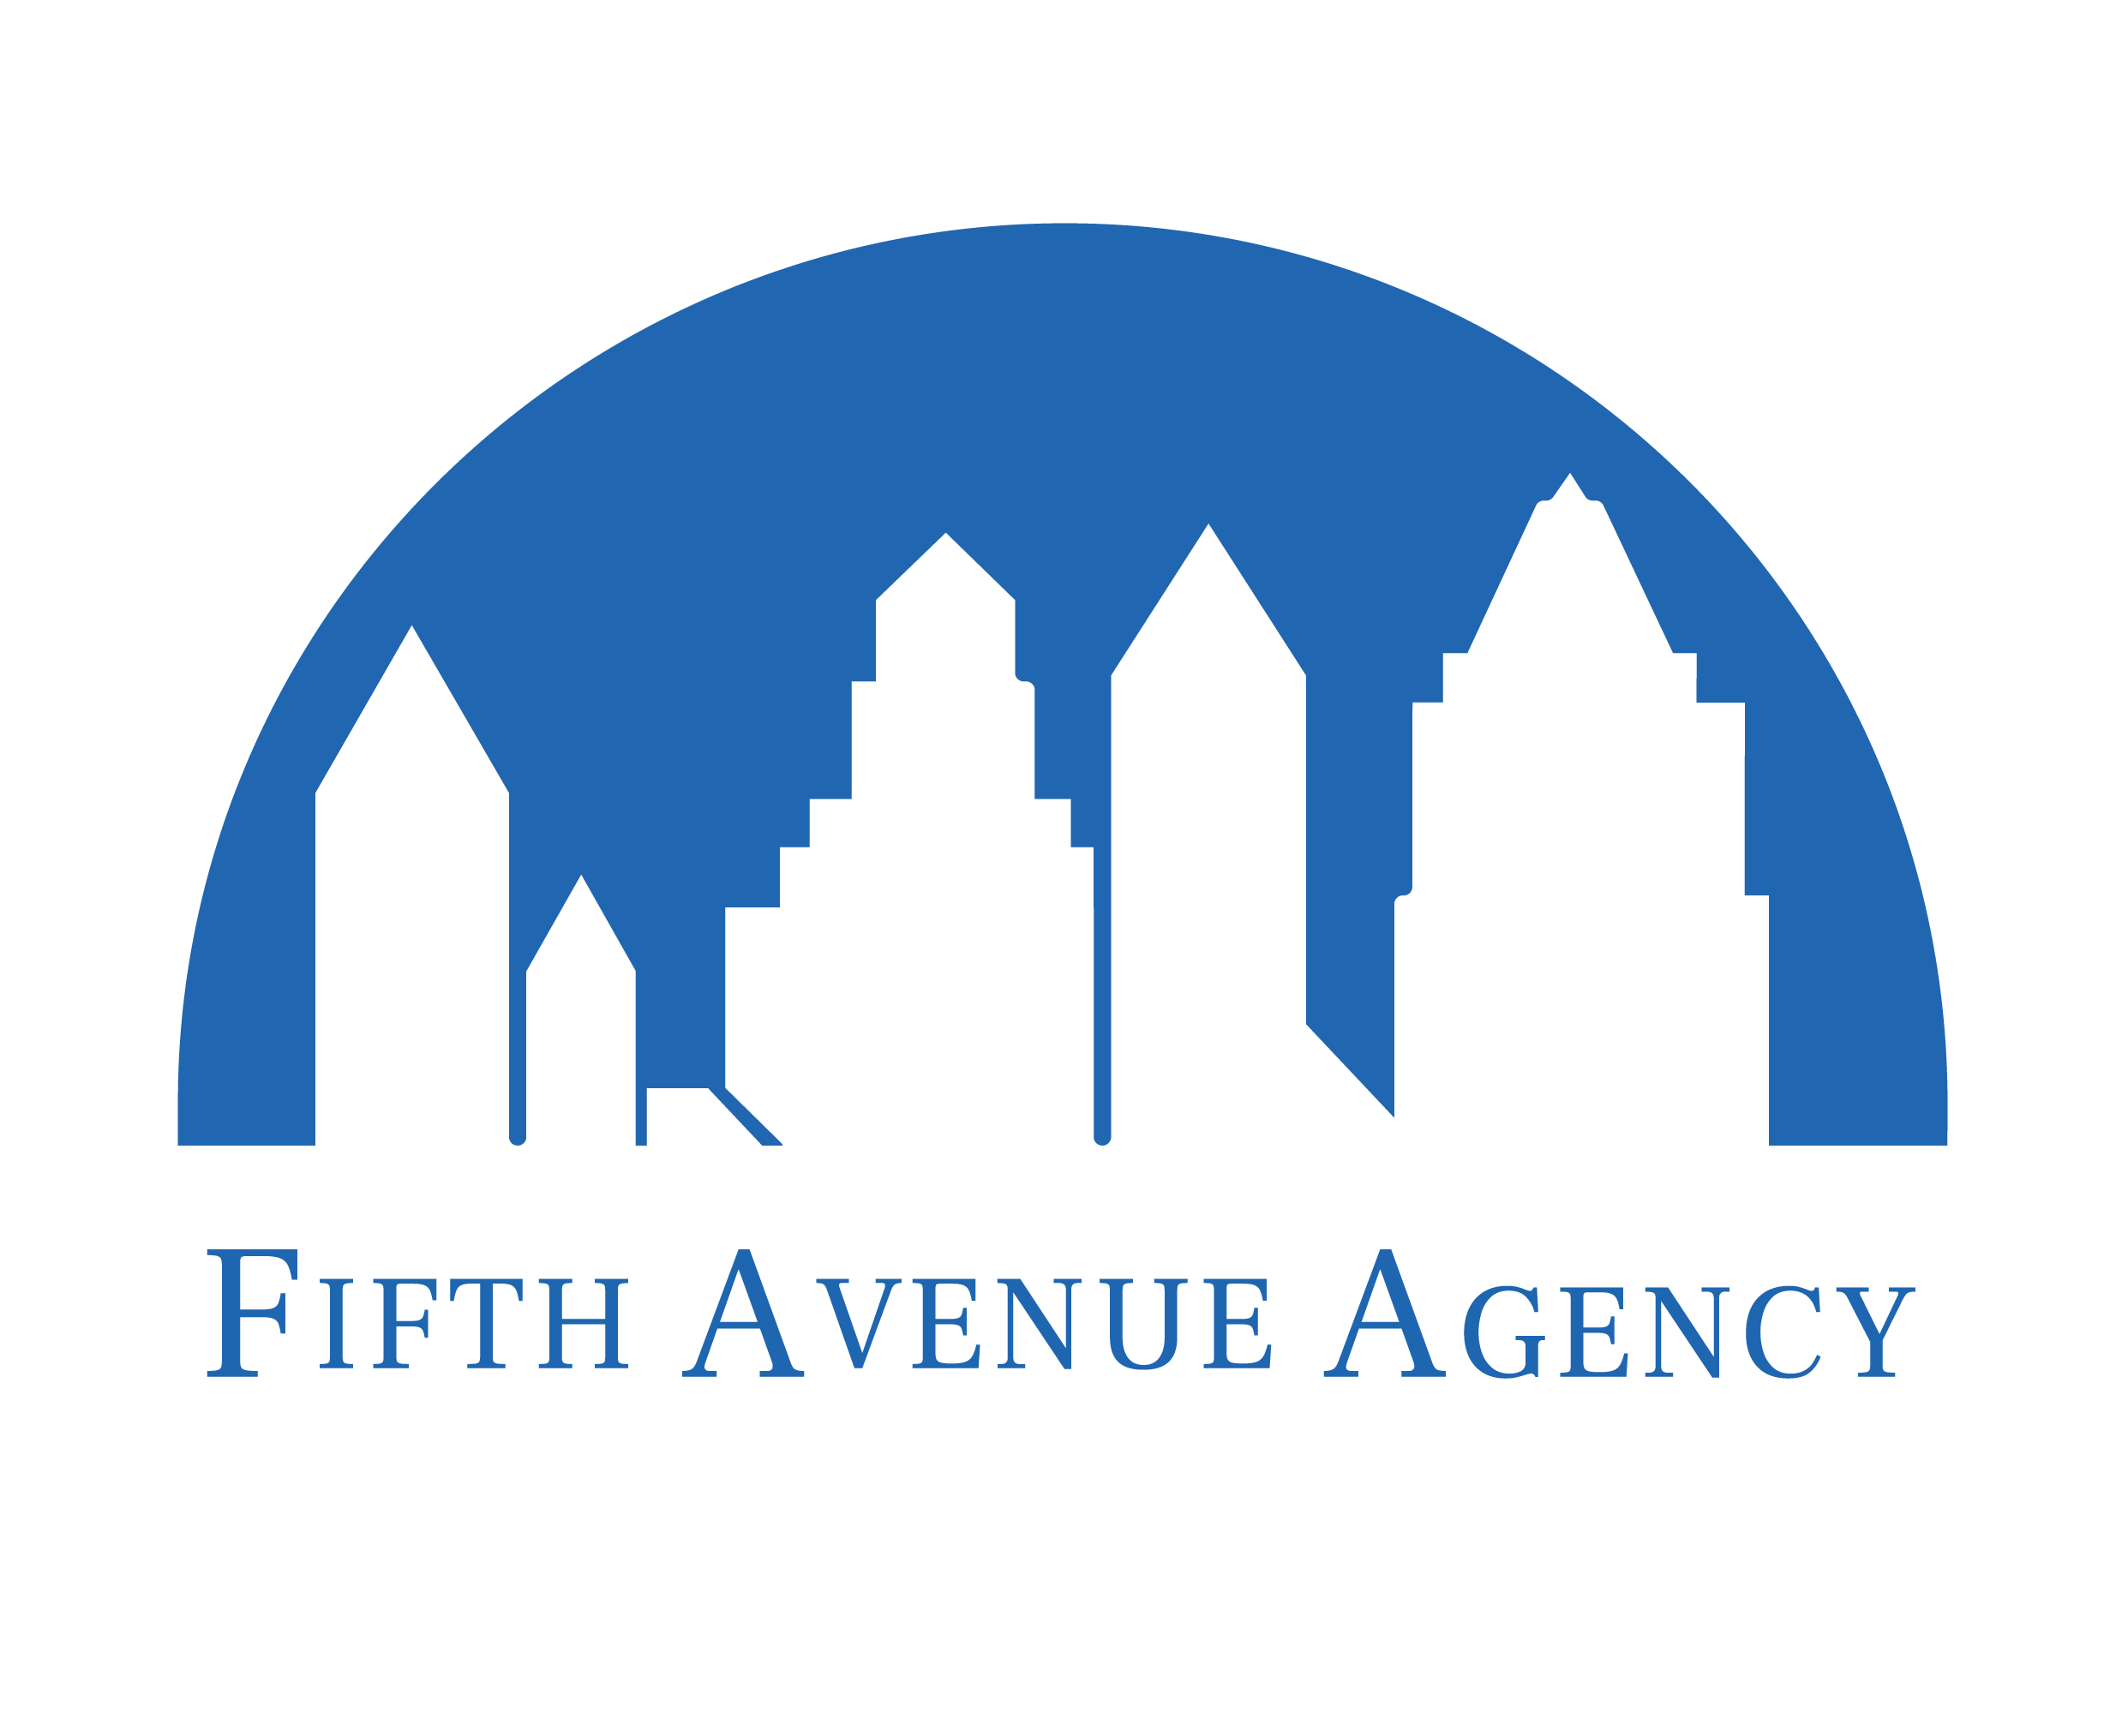 FifthAvenueAgency.com